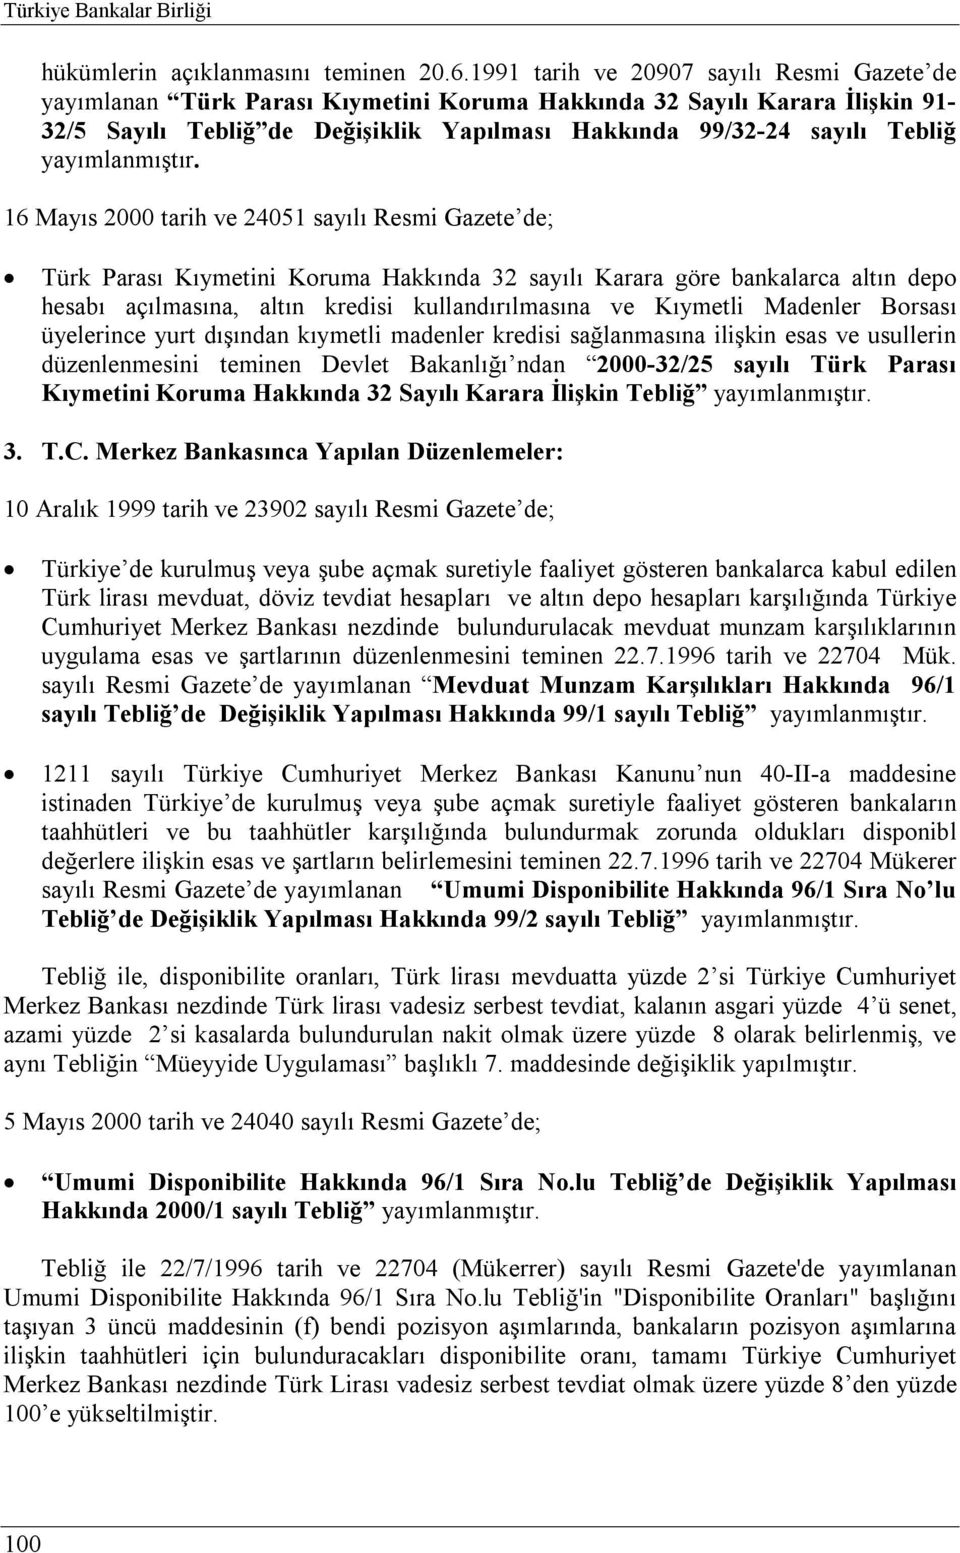 Mayıs 2000 tarih ve 24051 sayılı Resmi Gazete de; Türk Parası Kıymetini Koruma Hakkında 32 sayılı Karara göre bankalarca altın depo hesabı açılmasına, altın kredisi kullandırılmasına ve Kıymetli